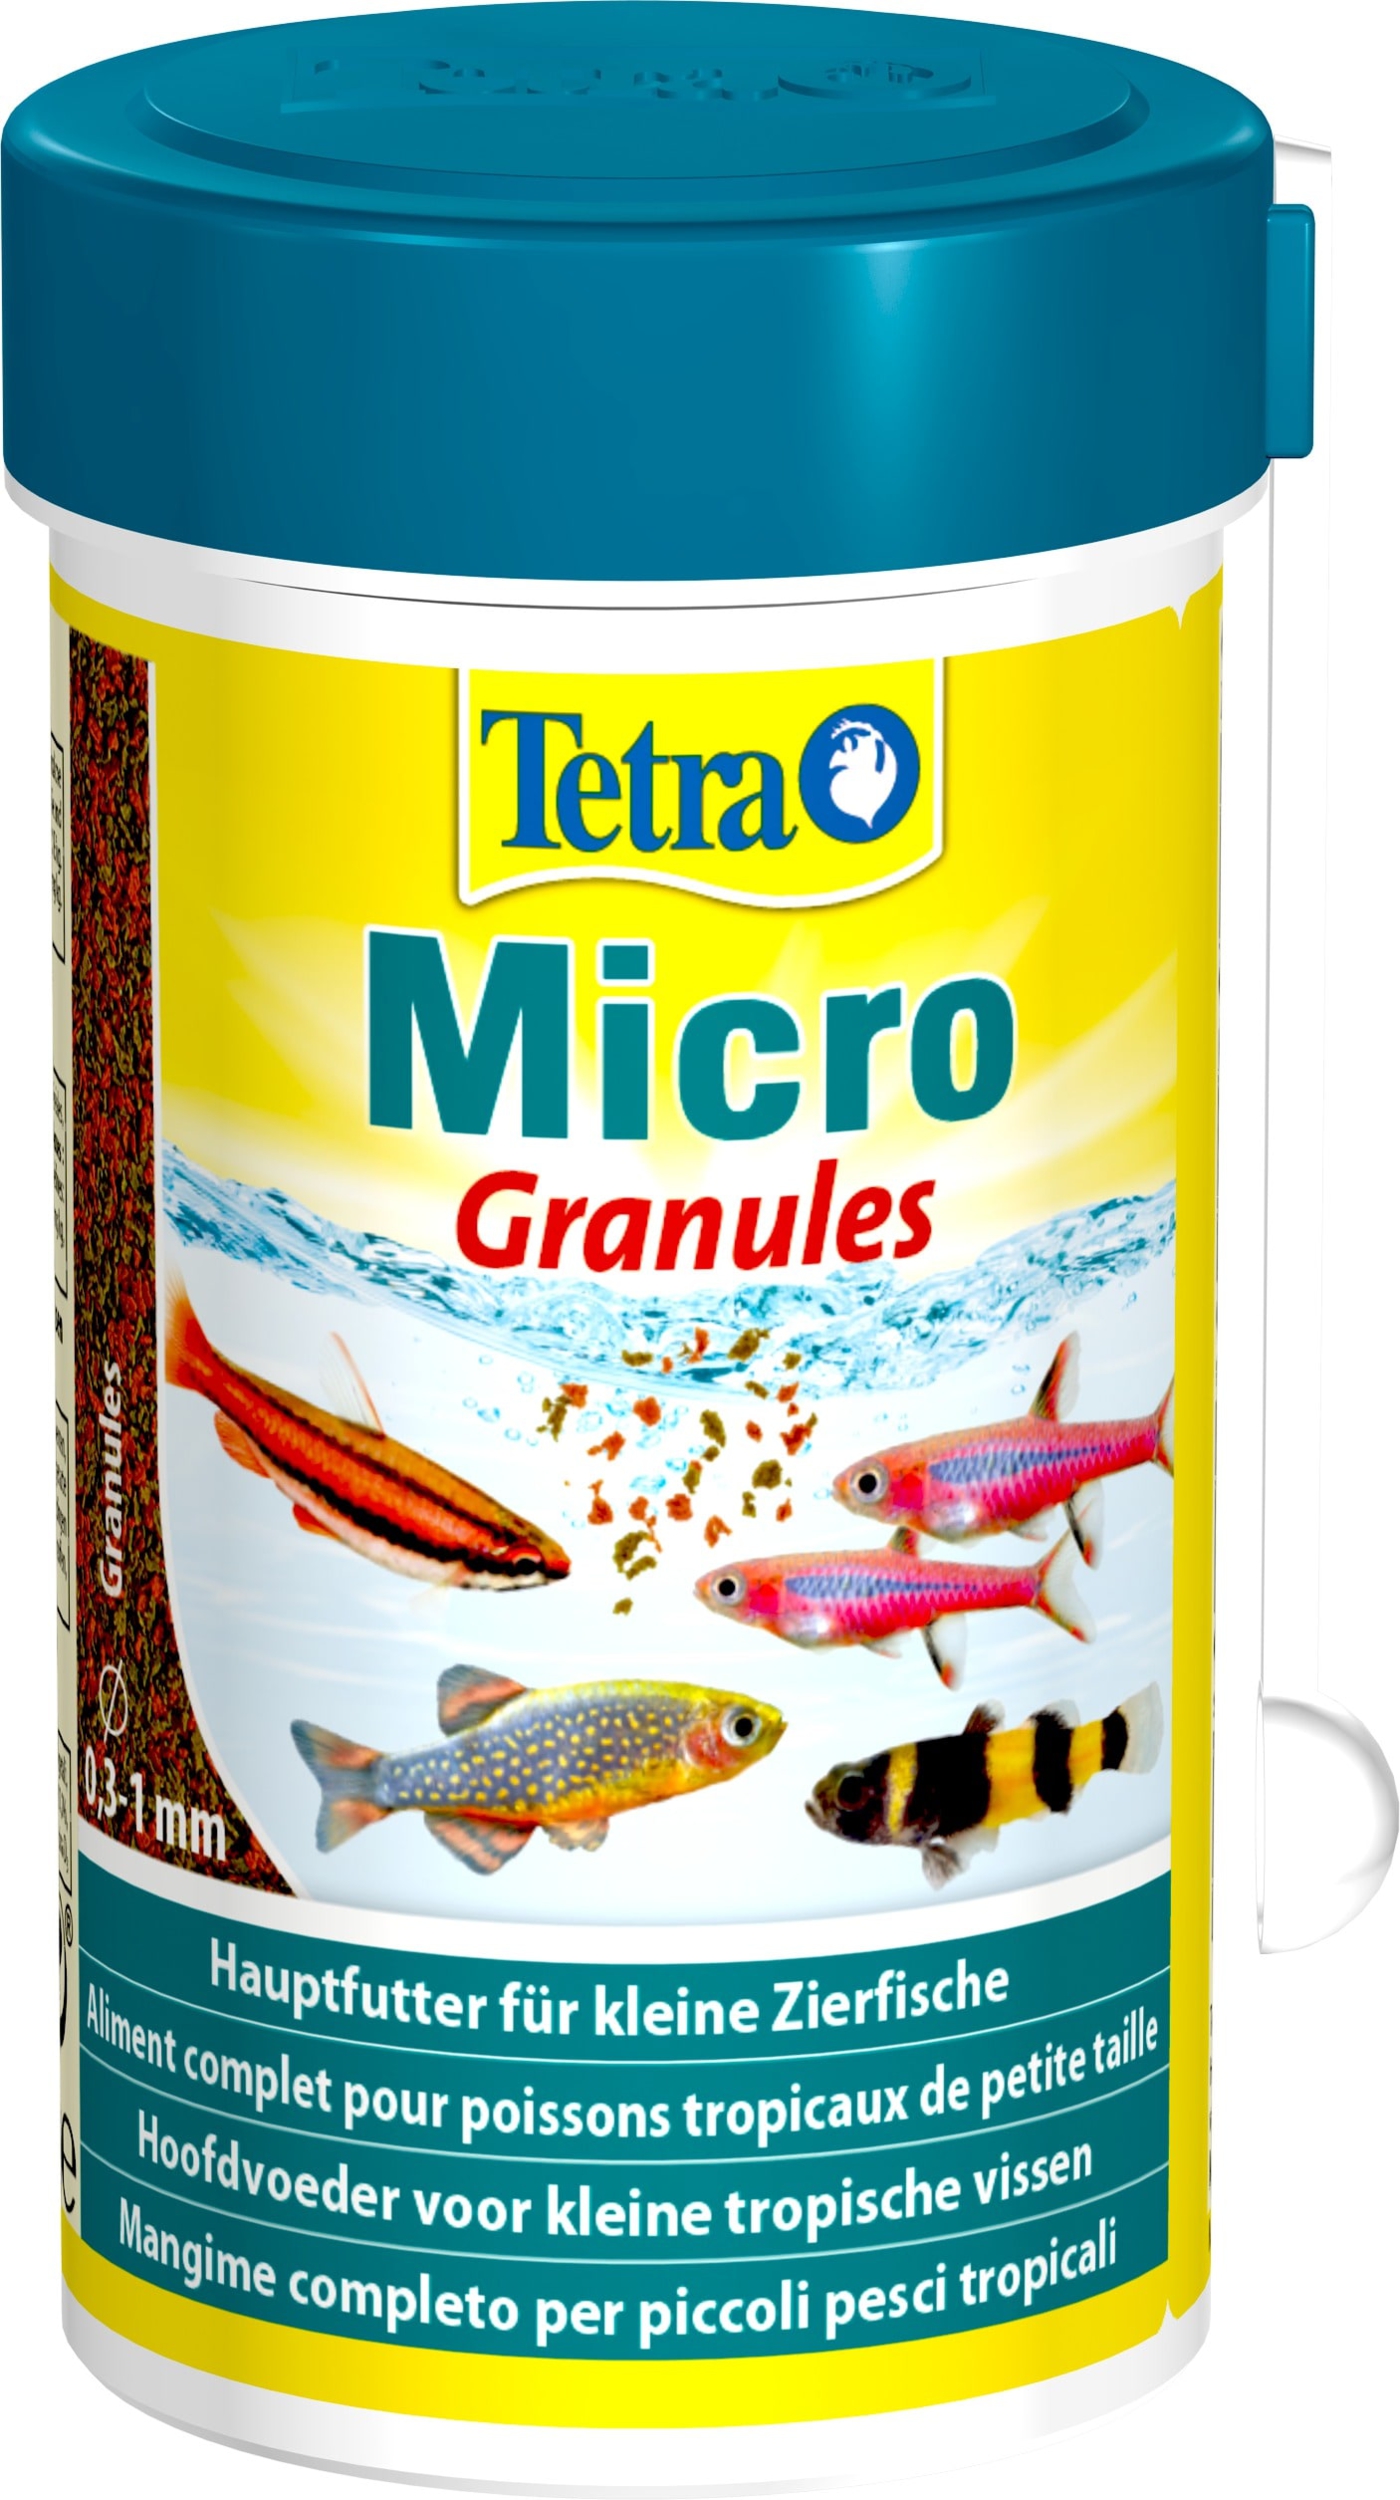 tetra-micro-granules-100-ml-aliment-complet-en-petits-granules-pour-tous-les-poissons-d-ornement-min